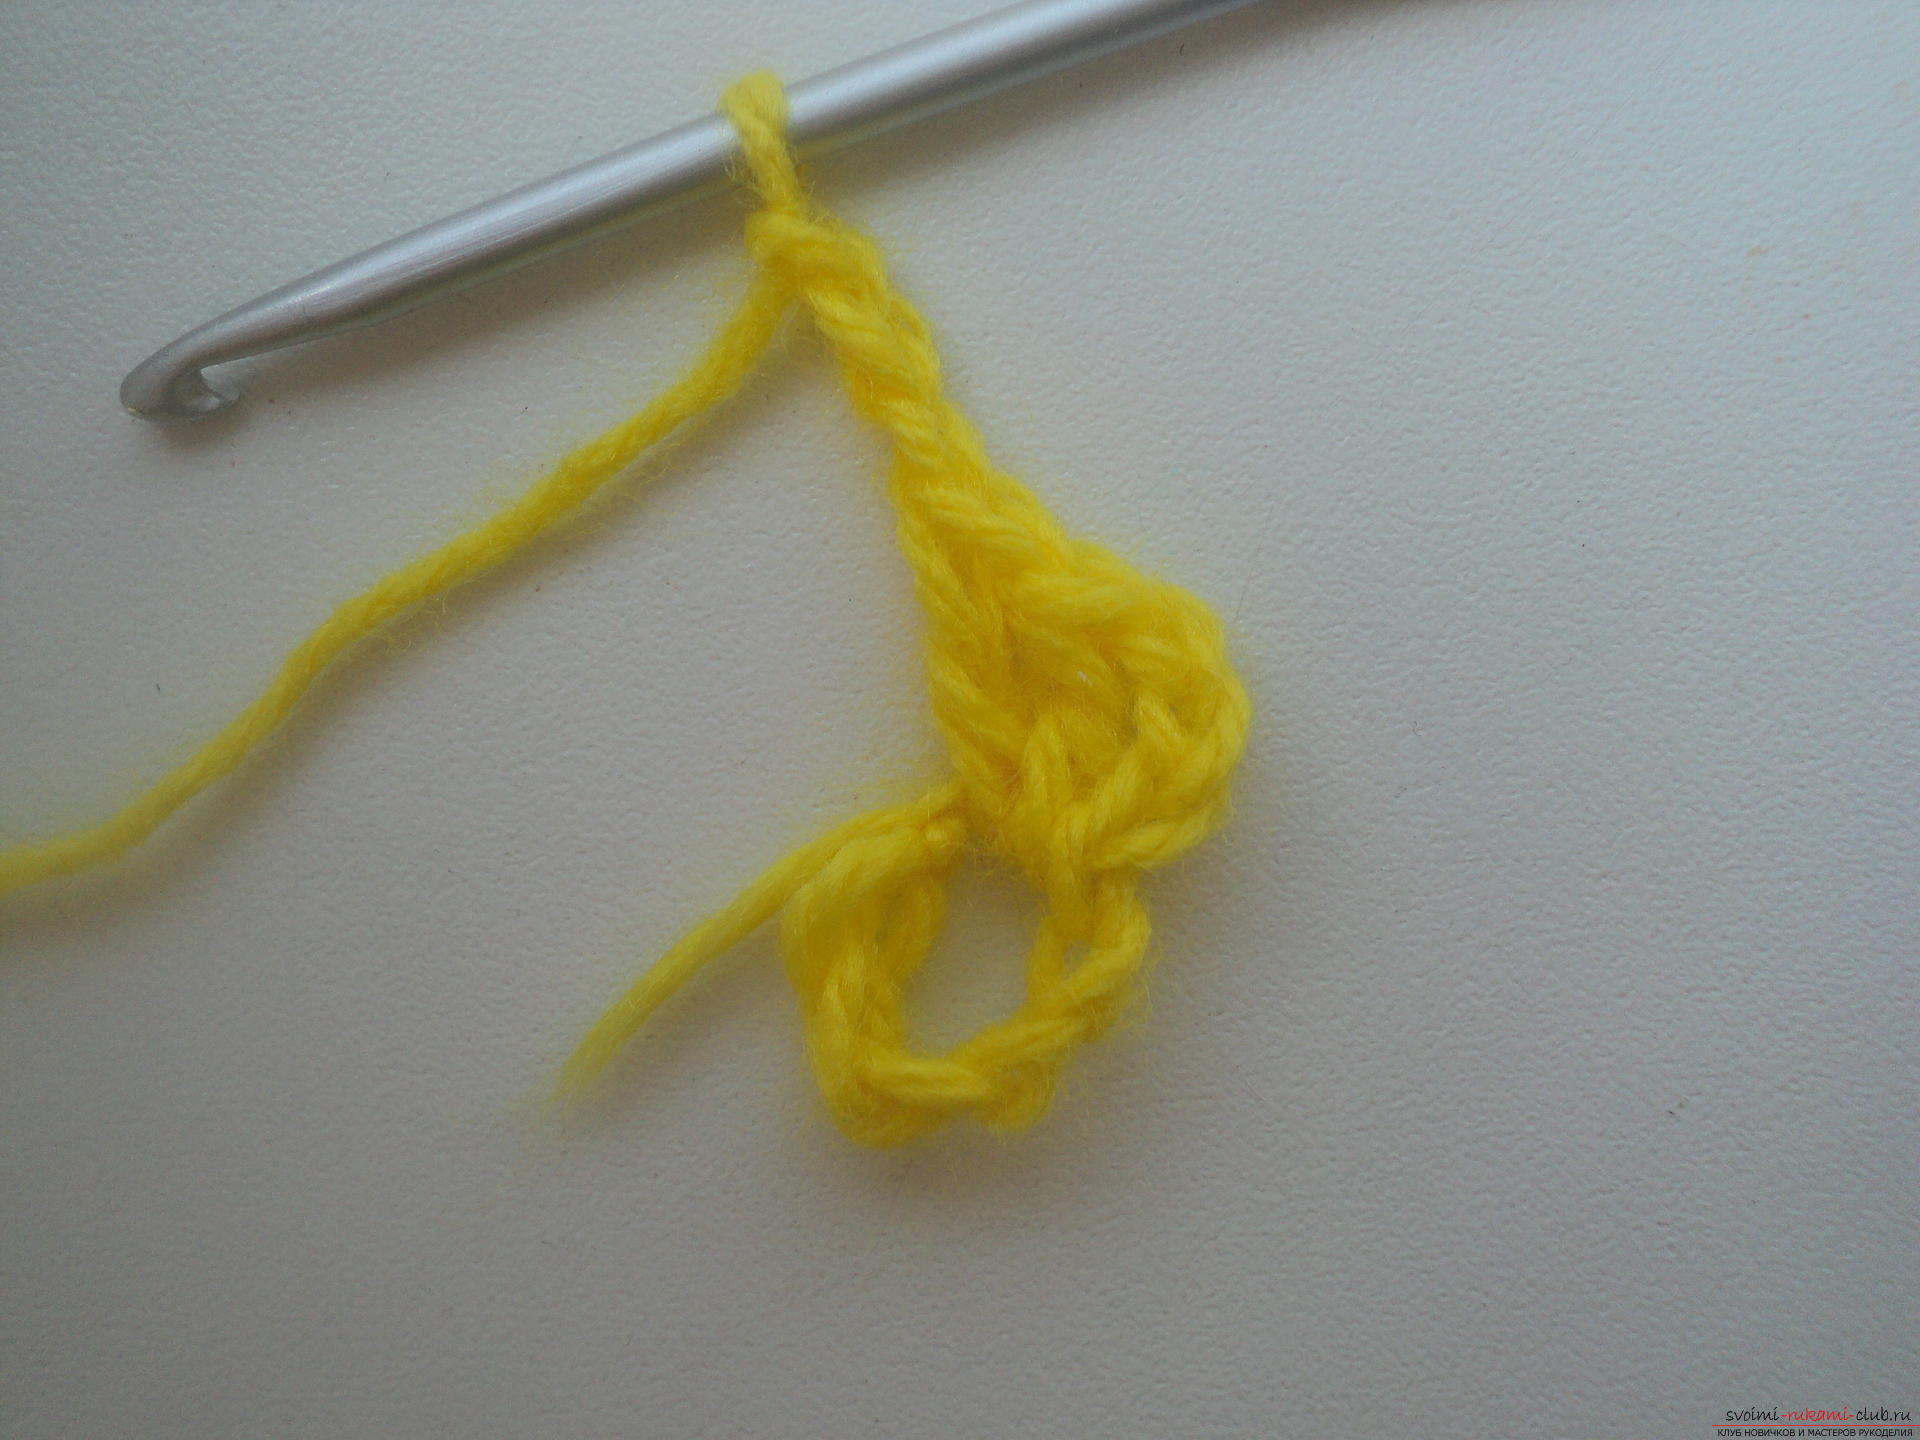 Deze gedetailleerde masterclass van crochet voor beginners leert hoe je de opengewerkte banddoek kunt haken